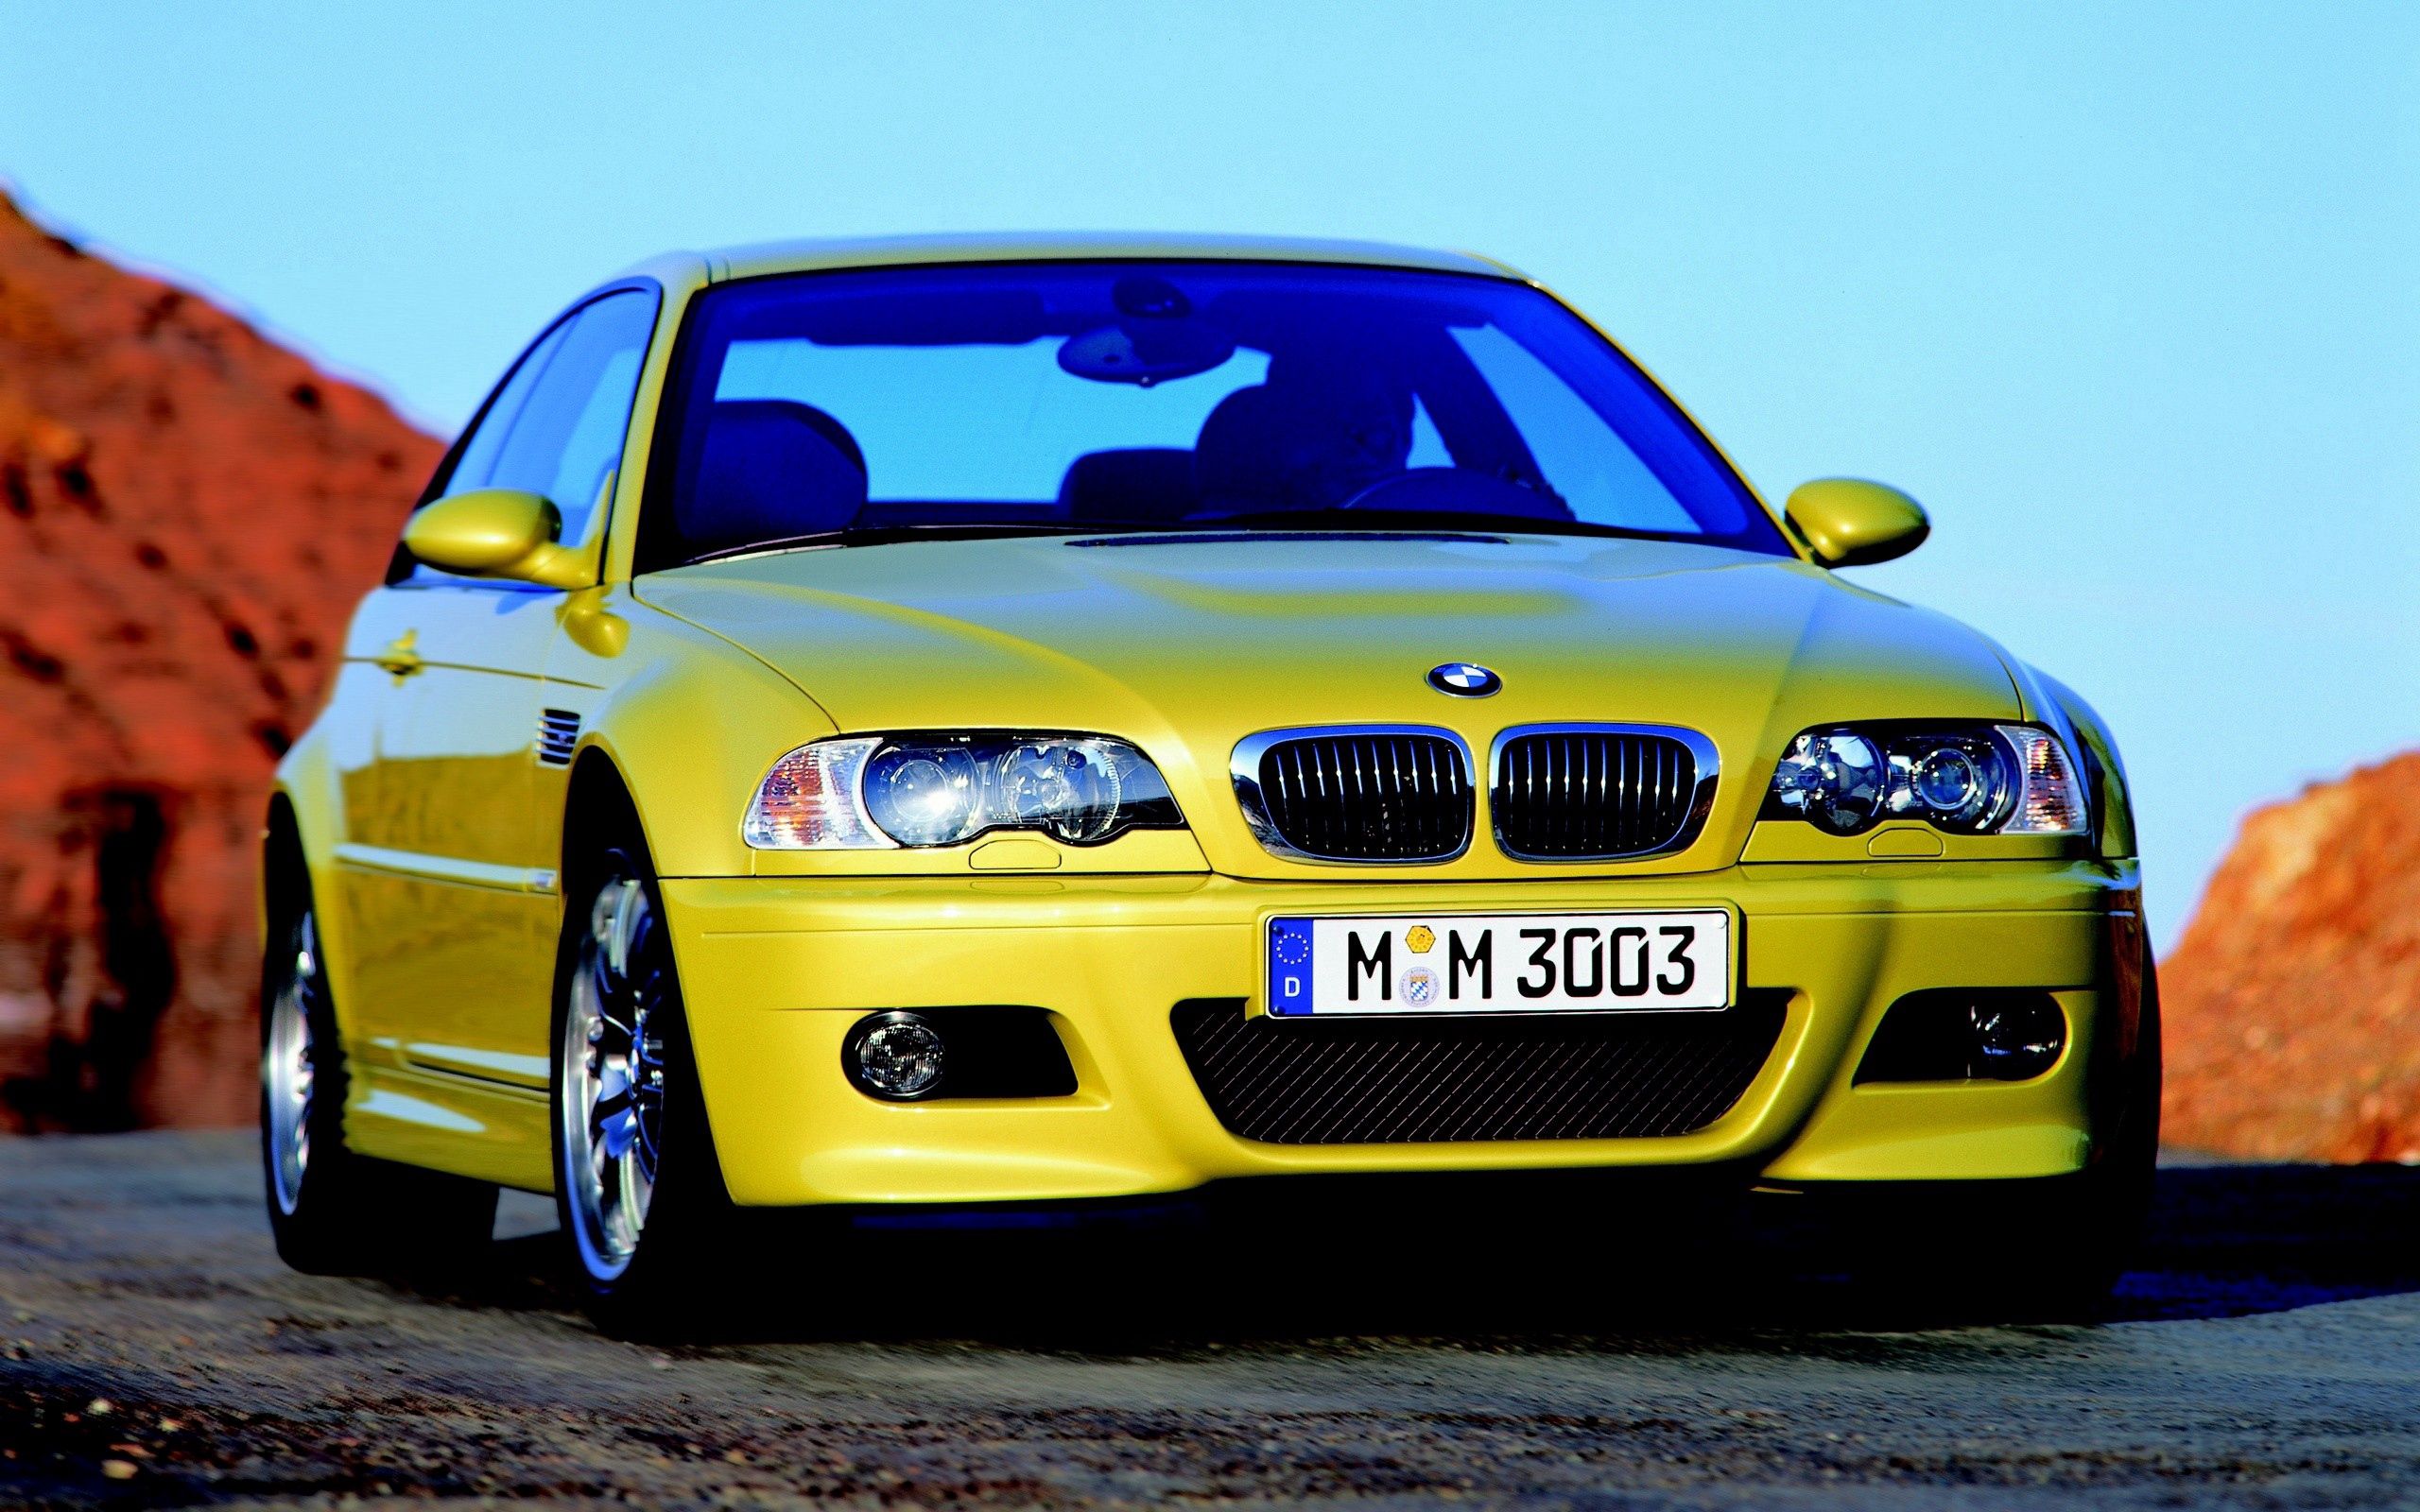 Про желтых машин. BMW m5 e39. БМВ 3003. Ряд желтых машин. Много желтых машин.